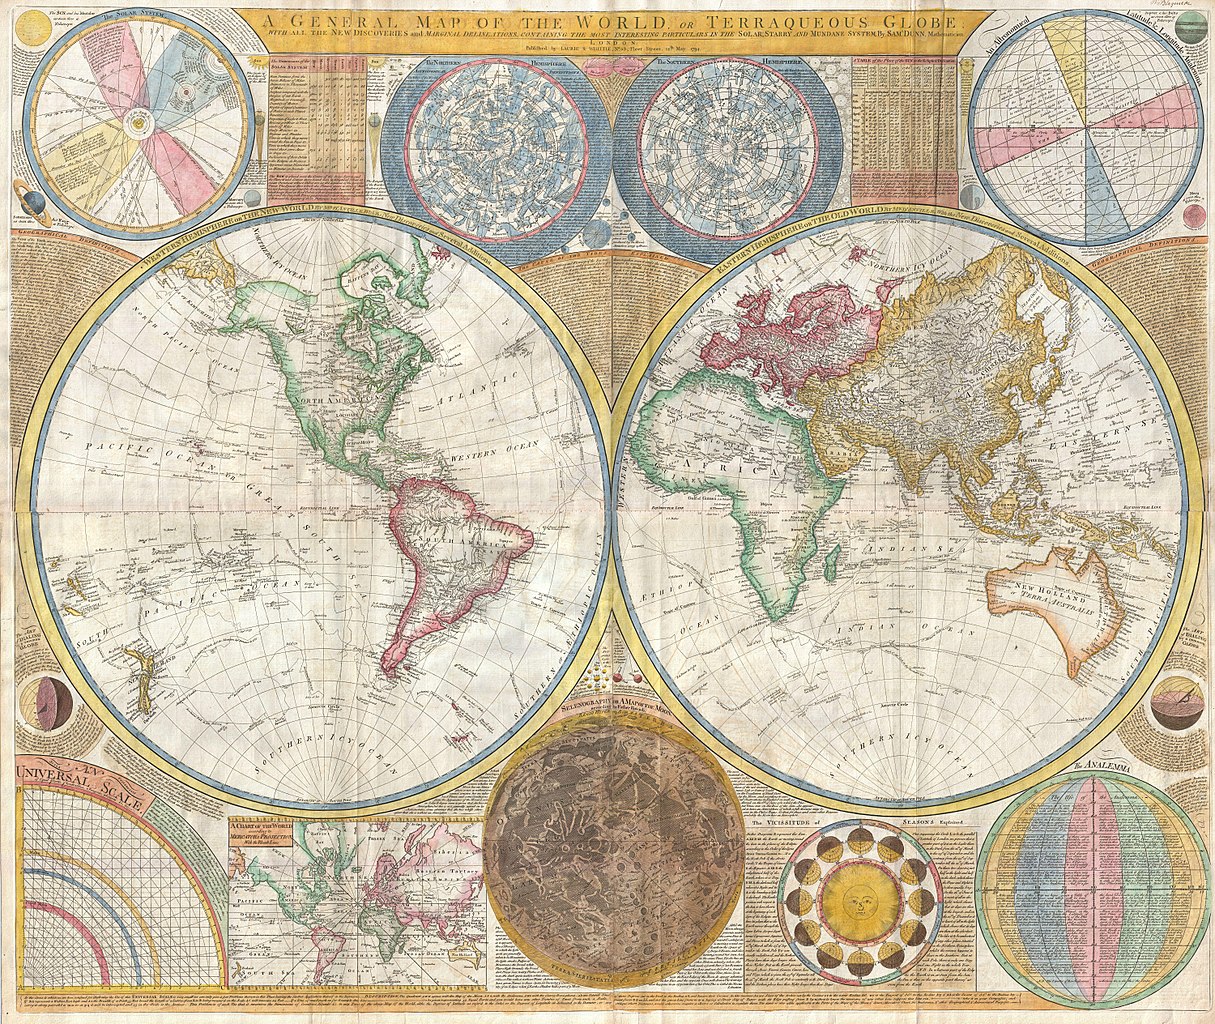 World map by Samuel Dunn, 1794